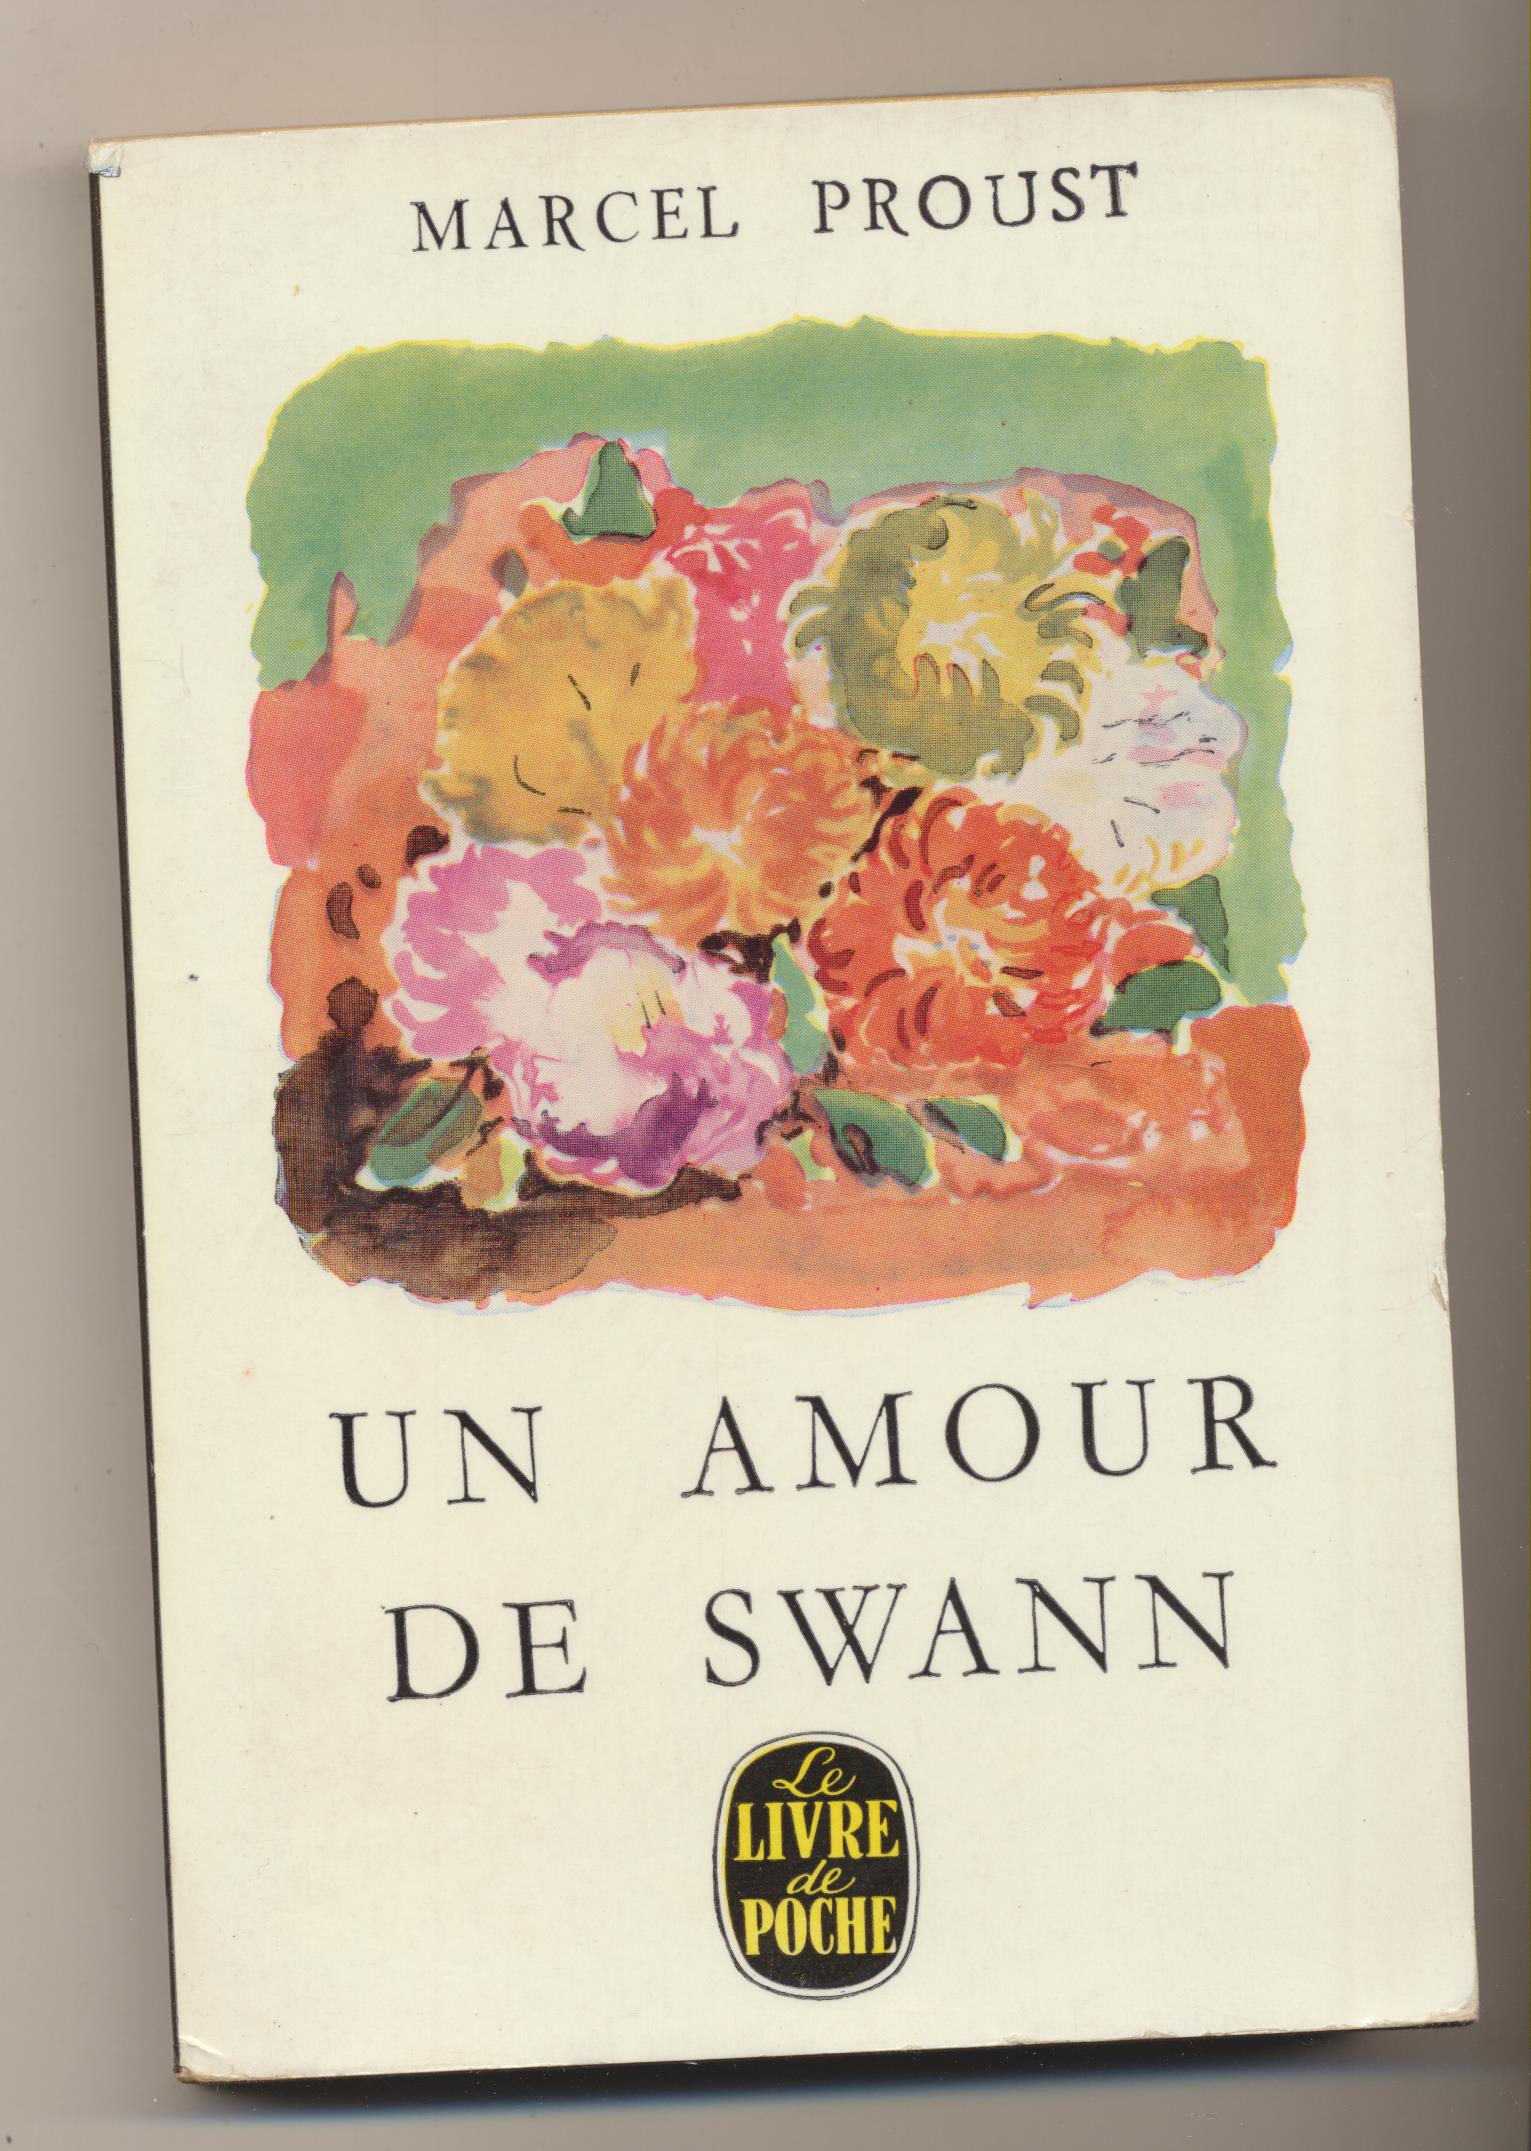 Marcel Proust. Un amour de Swann. Le Libre de Poche-Paris 1962